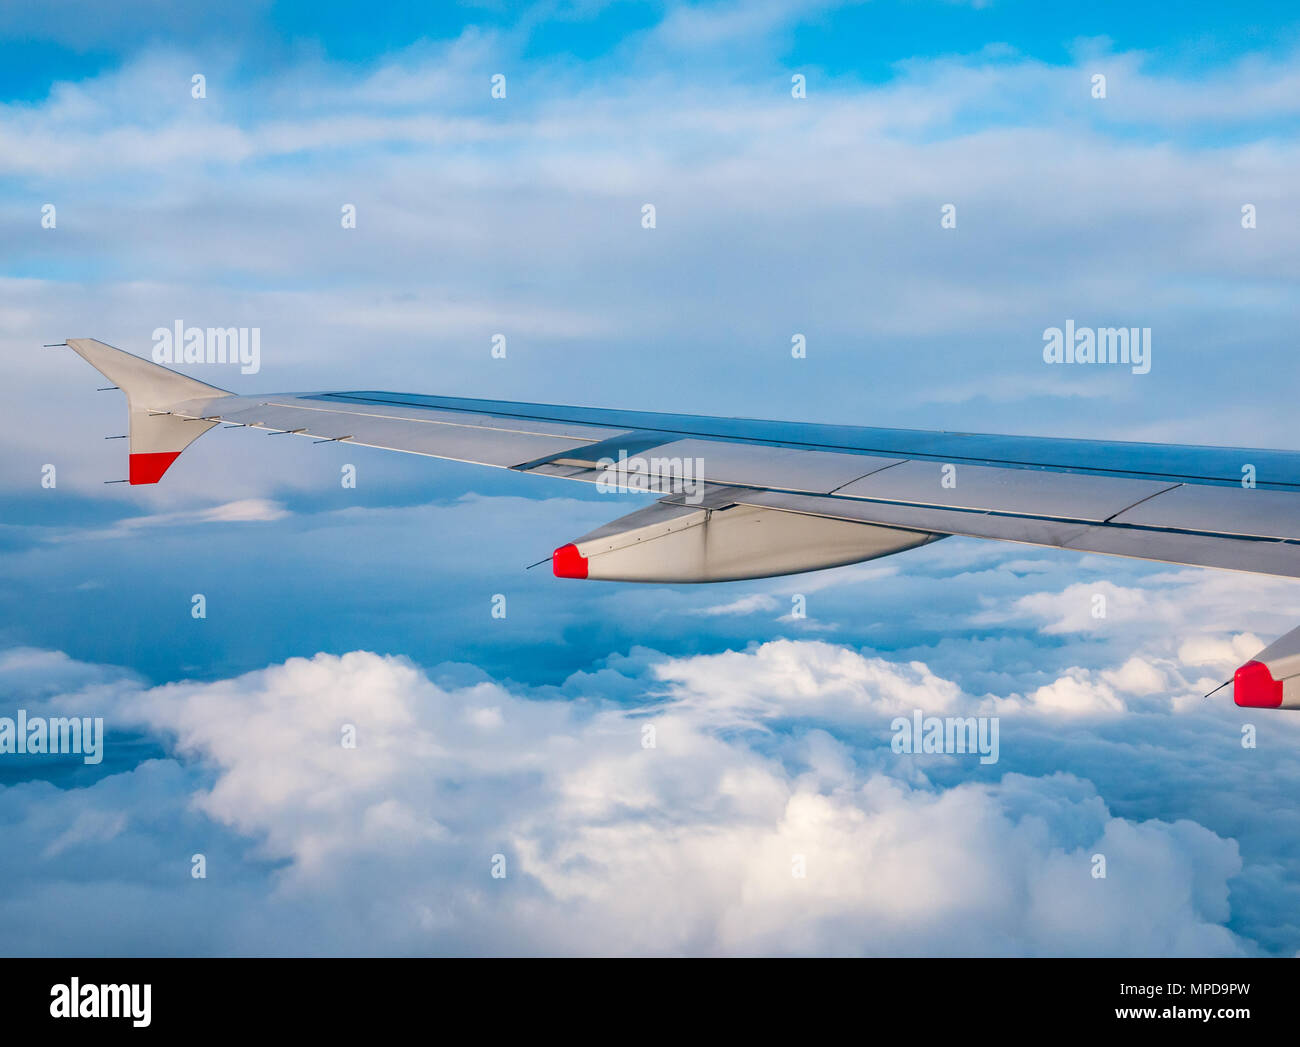 British Airways Airbus 319 aile d'avion vu d'avion en vol au-dessus de la fenêtre de puffy et fins nuages et ciel bleu clair en Royaume-Uni Banque D'Images